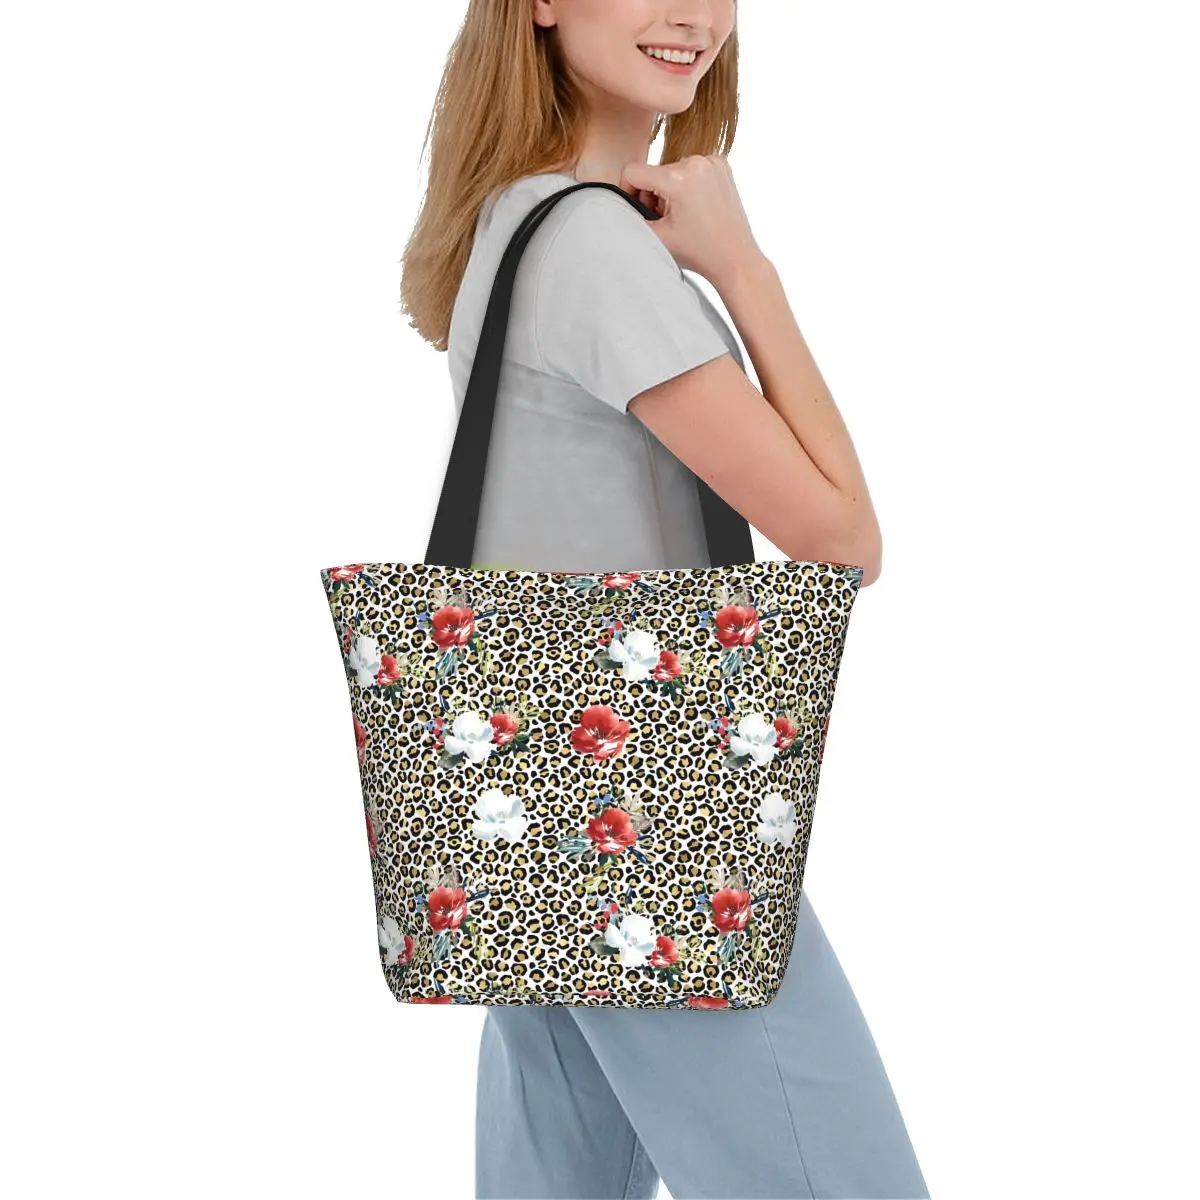 

Сумка-шоппер с цветочным леопардовым принтом, женская сумочка-тоут с графическим дизайном, забавная тканевая пляжная сумка для покупок